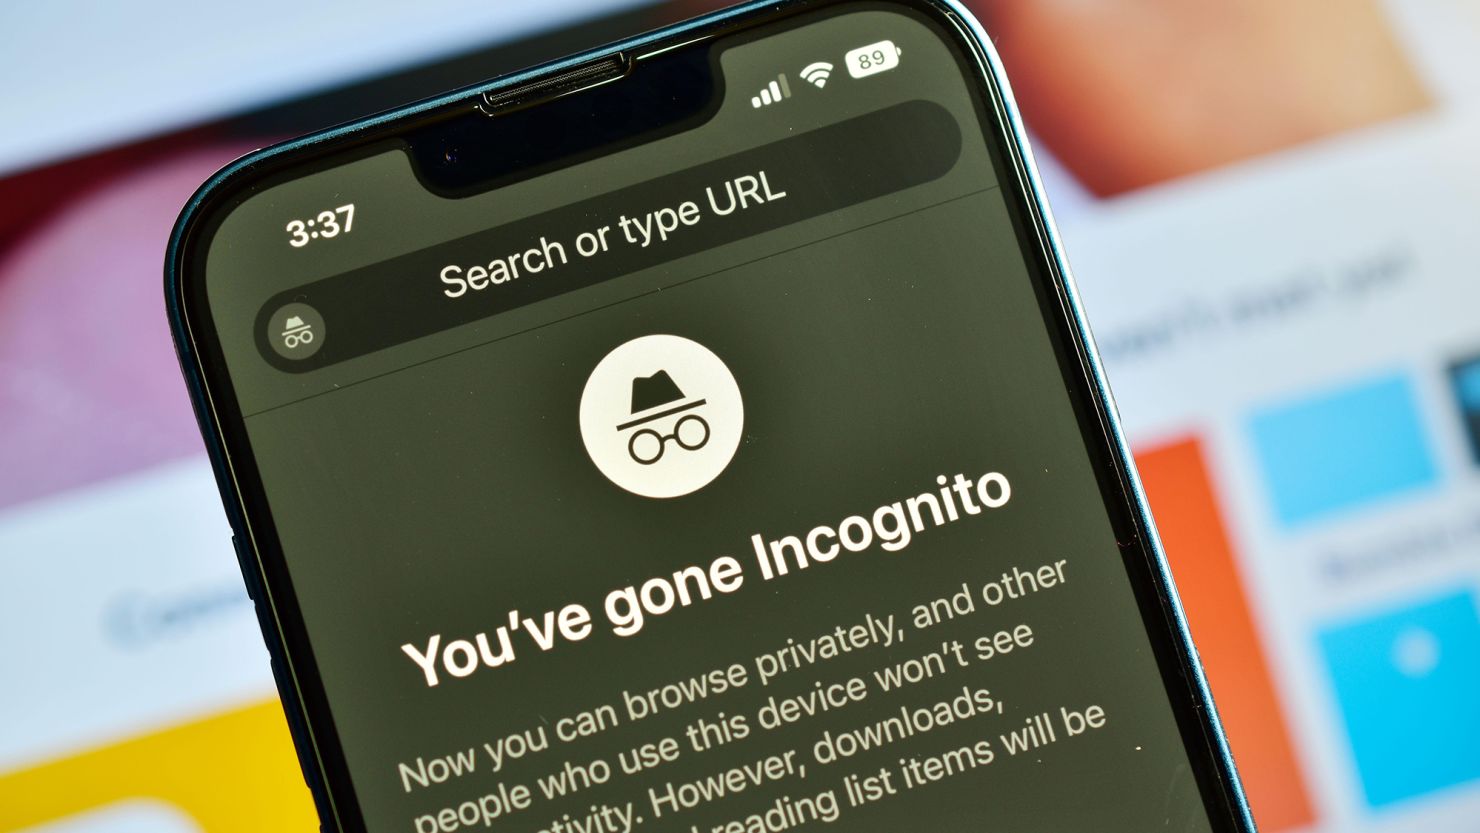 ඔයත් Google Incognito පාවිච්චි කරනවද? මෙන්න සතුට ඩබල් වෙන විදිහේ ආරංචියක්